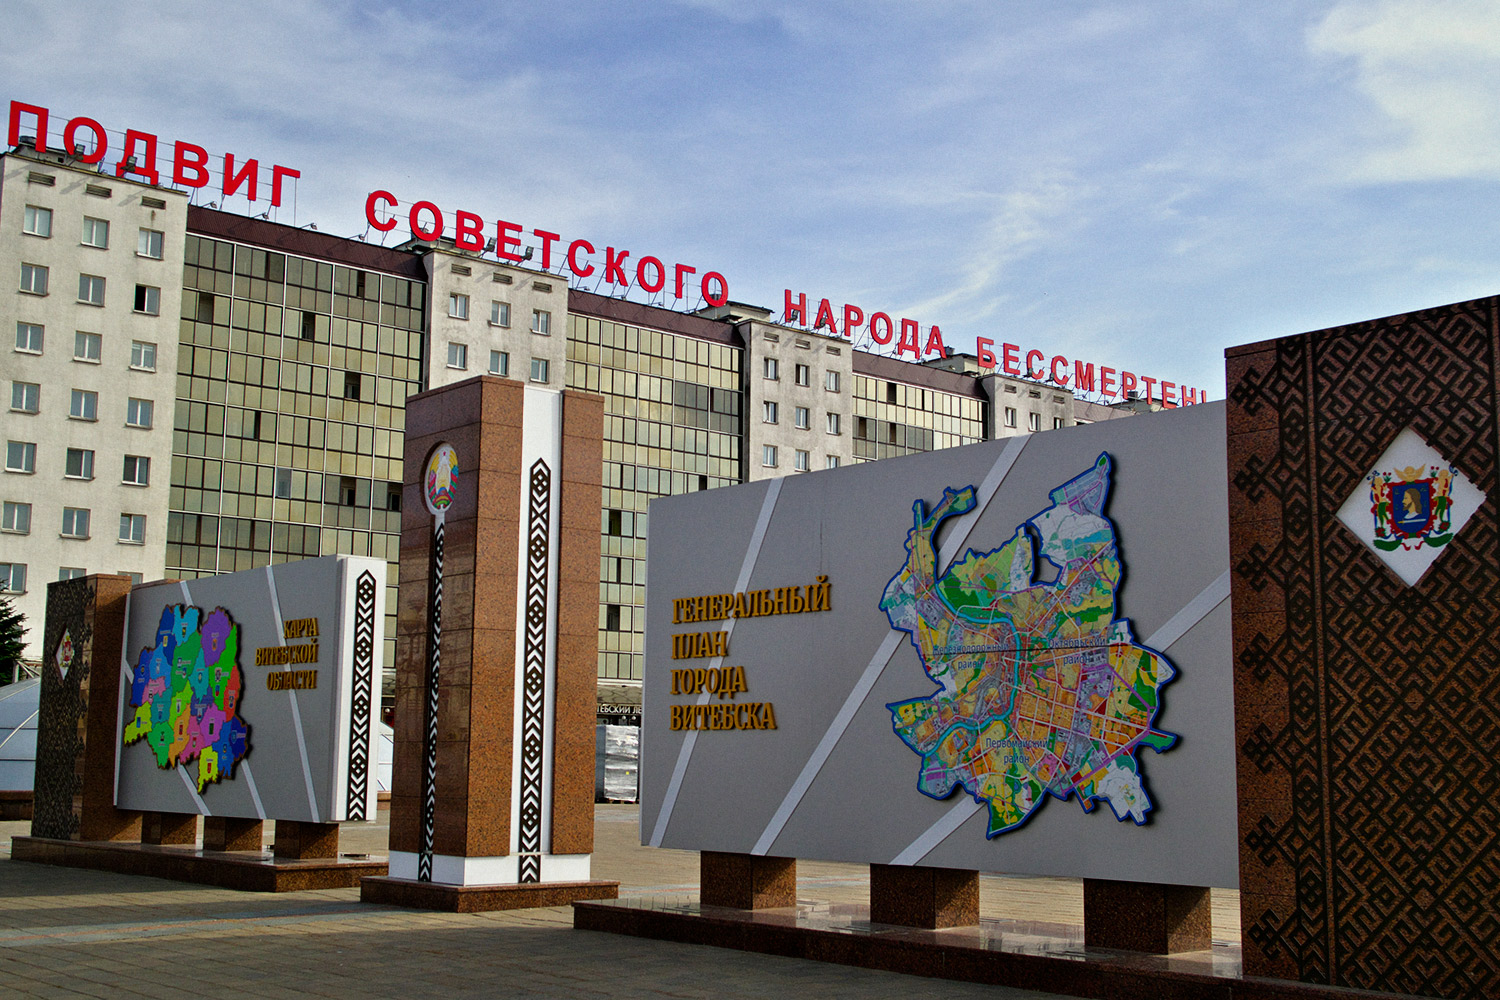 Так выглядит обновленный лозунг «Подвиг советского народа бессмертен!» на площади Победы в Витебске. Фото Сергея Серебро